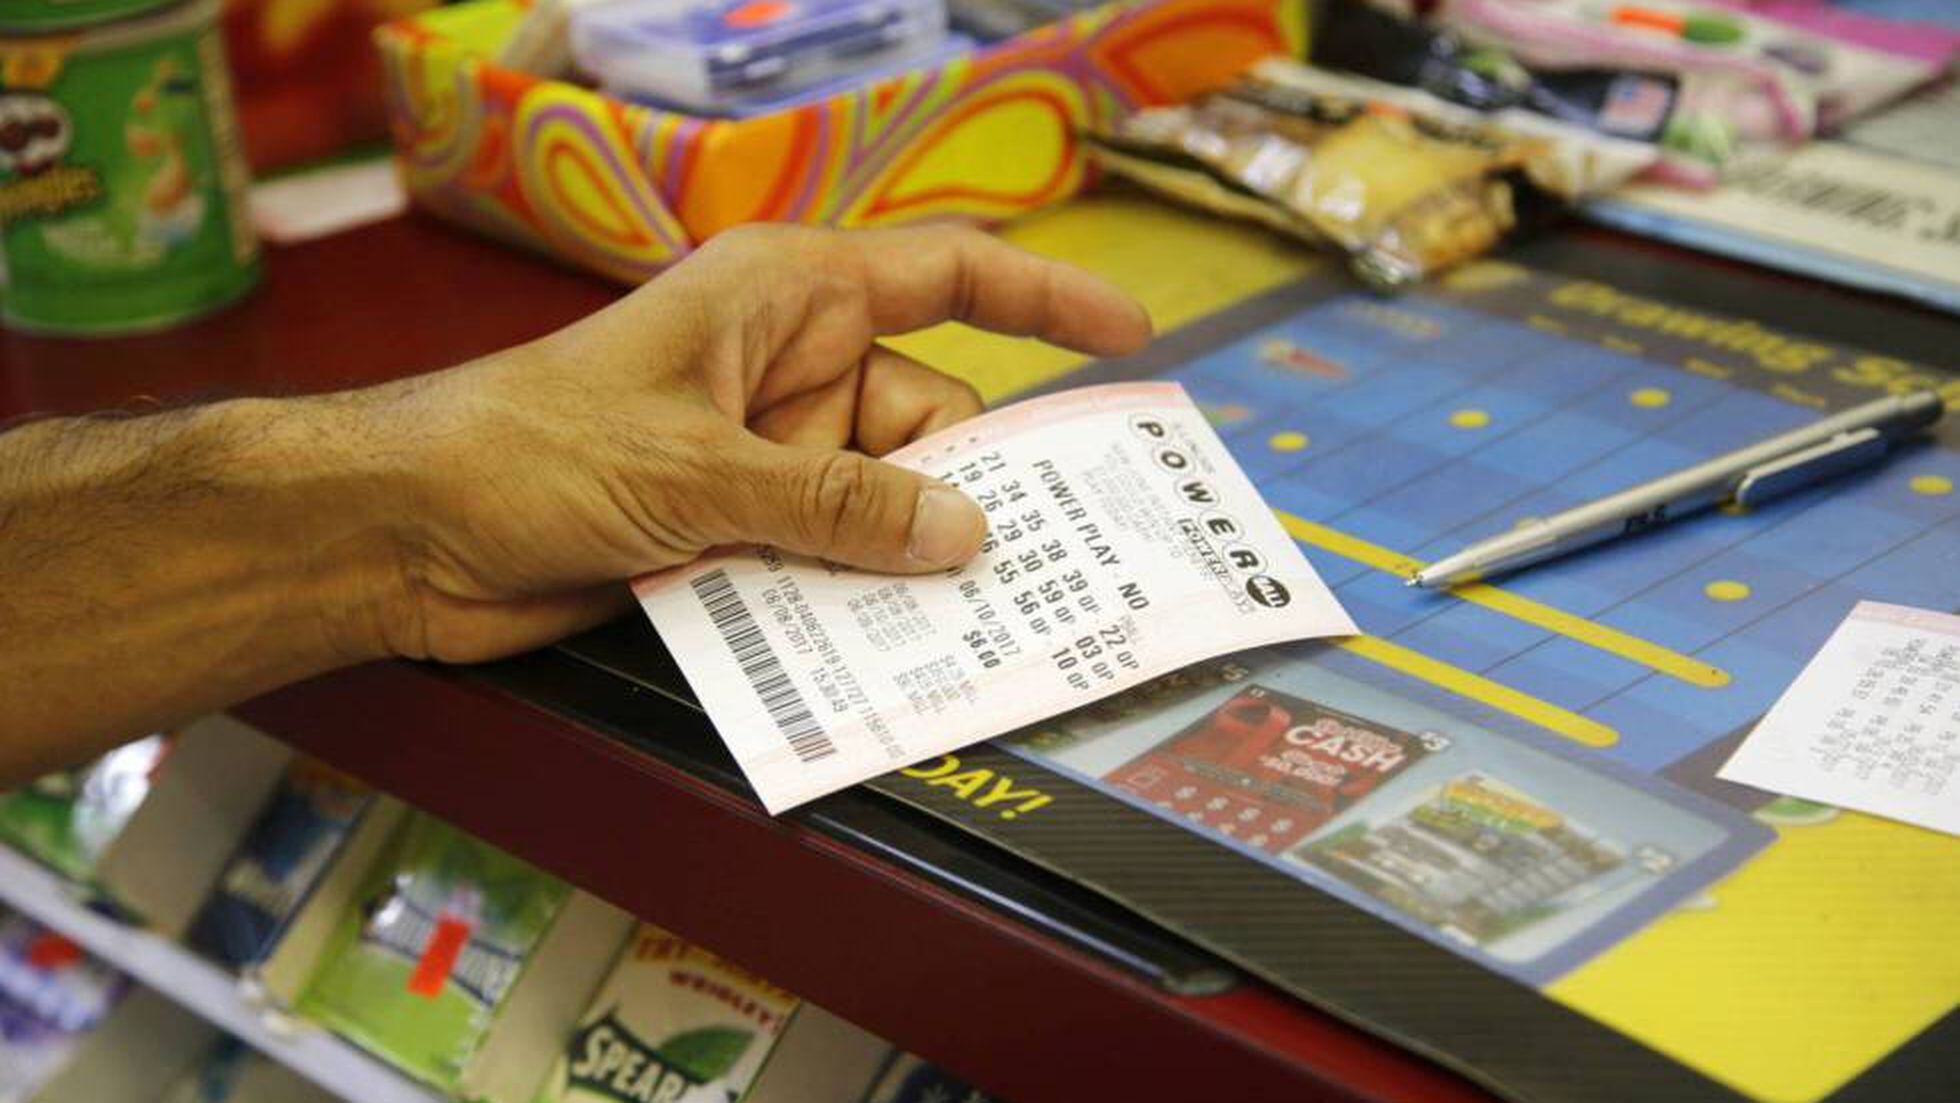 La batalla por el anonimato de una ganadora de lotería en Estados Unidos | Mundo Global | EL PAÍS